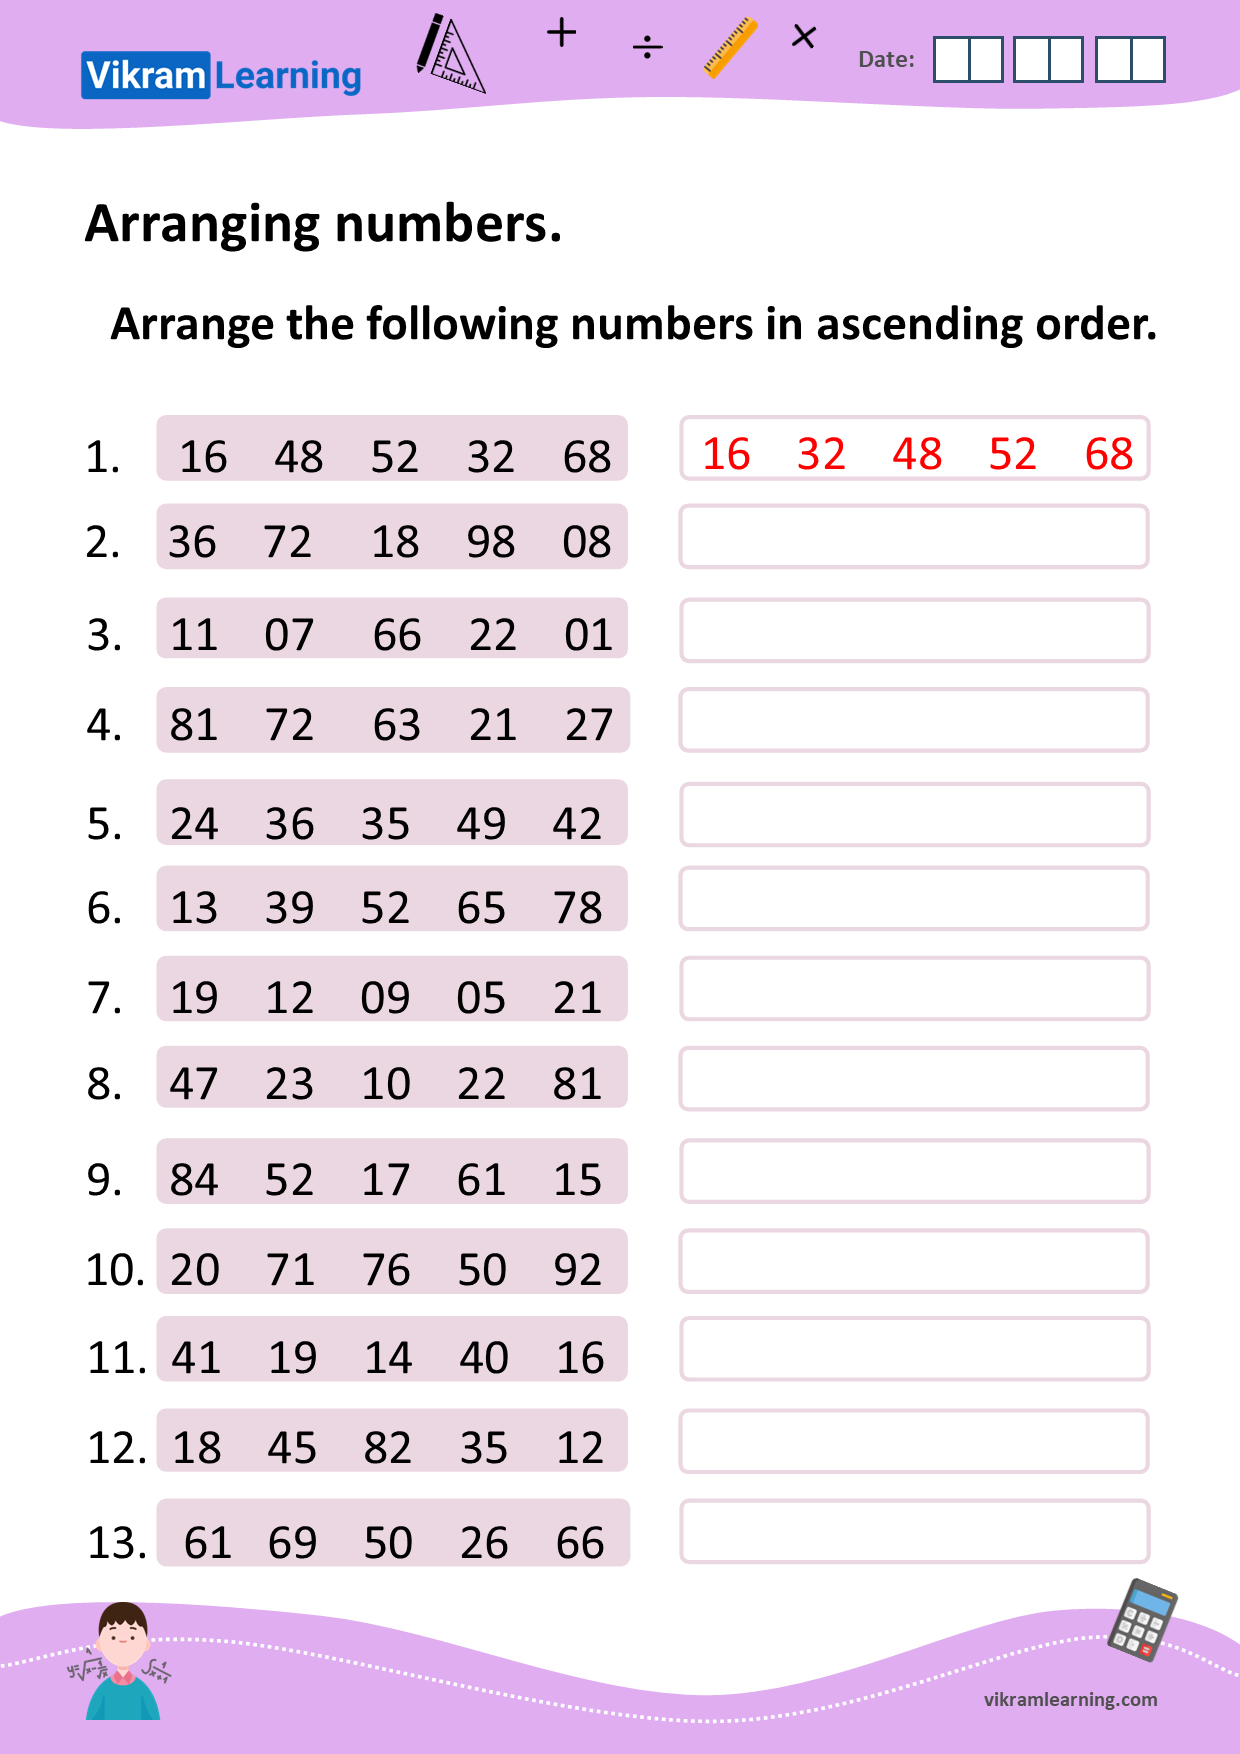 Download arranging numbers in ascending order, and descending order worksheets